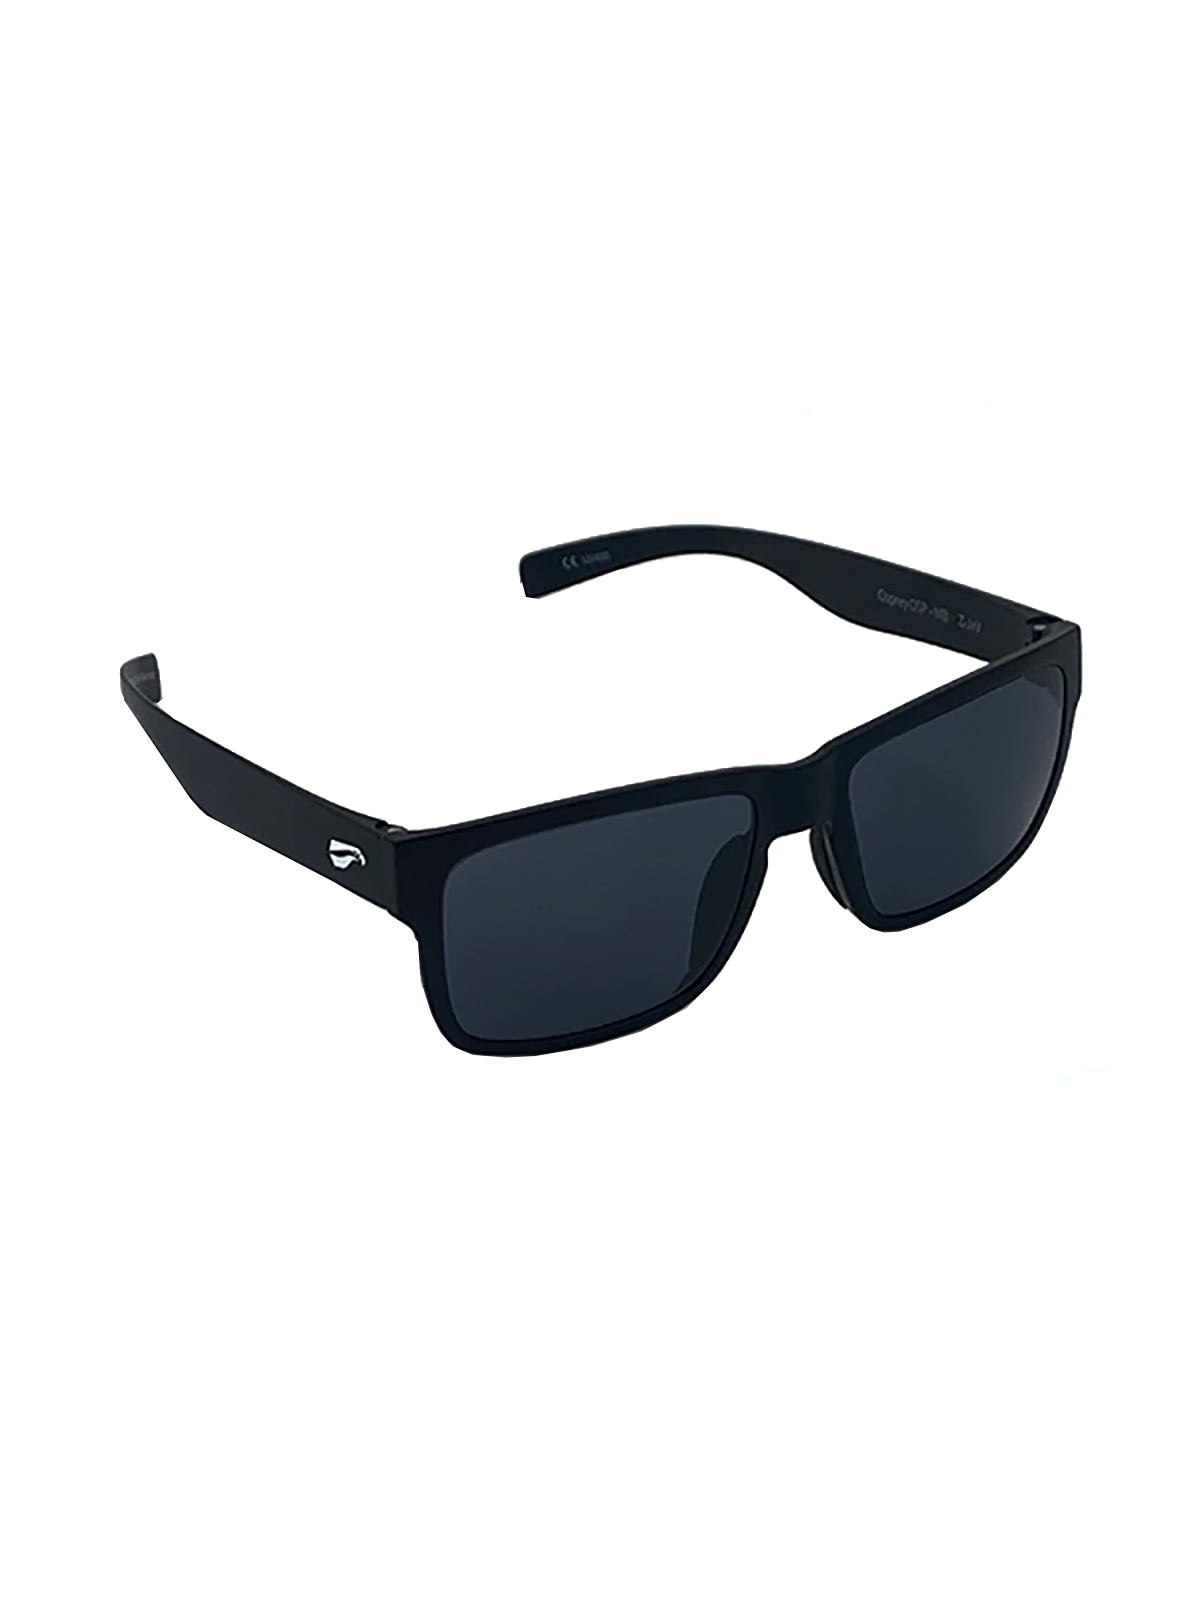 Flying Eyes Sunglasses Osprey - Matte Black Frame, Dark Solid Gray Lenses